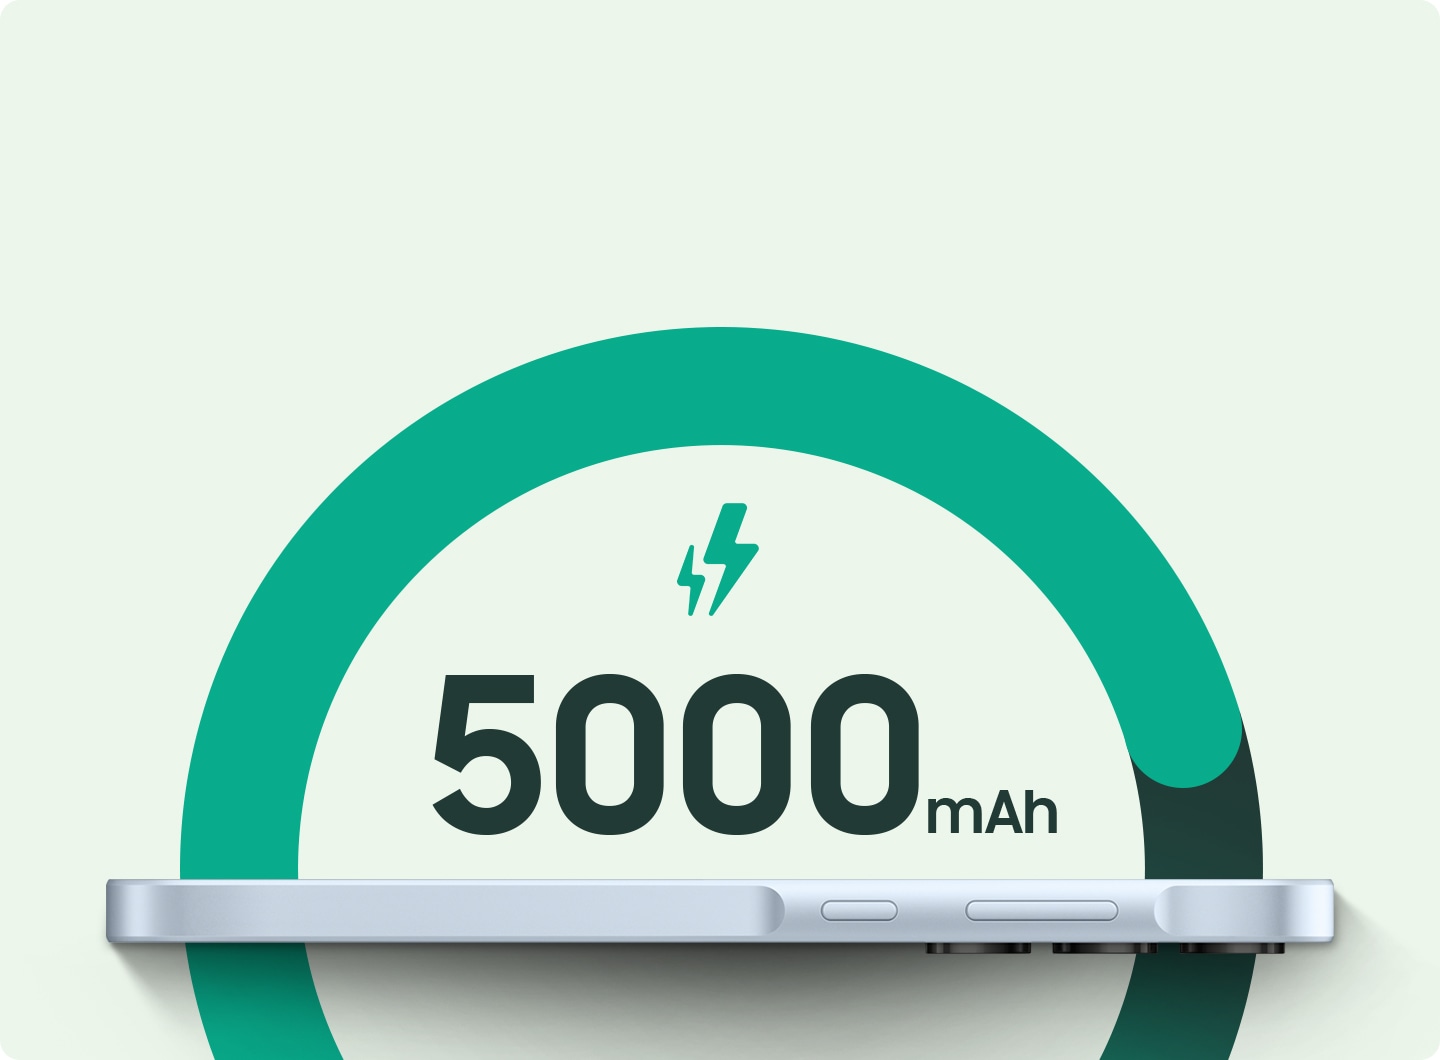 Boční profil naplocho ležícího smartphonu s numerickým displejem '5000mAh' a nad ním promítnutým symbolem blesku, který symbolizuje kapacitu baterie telefonu.